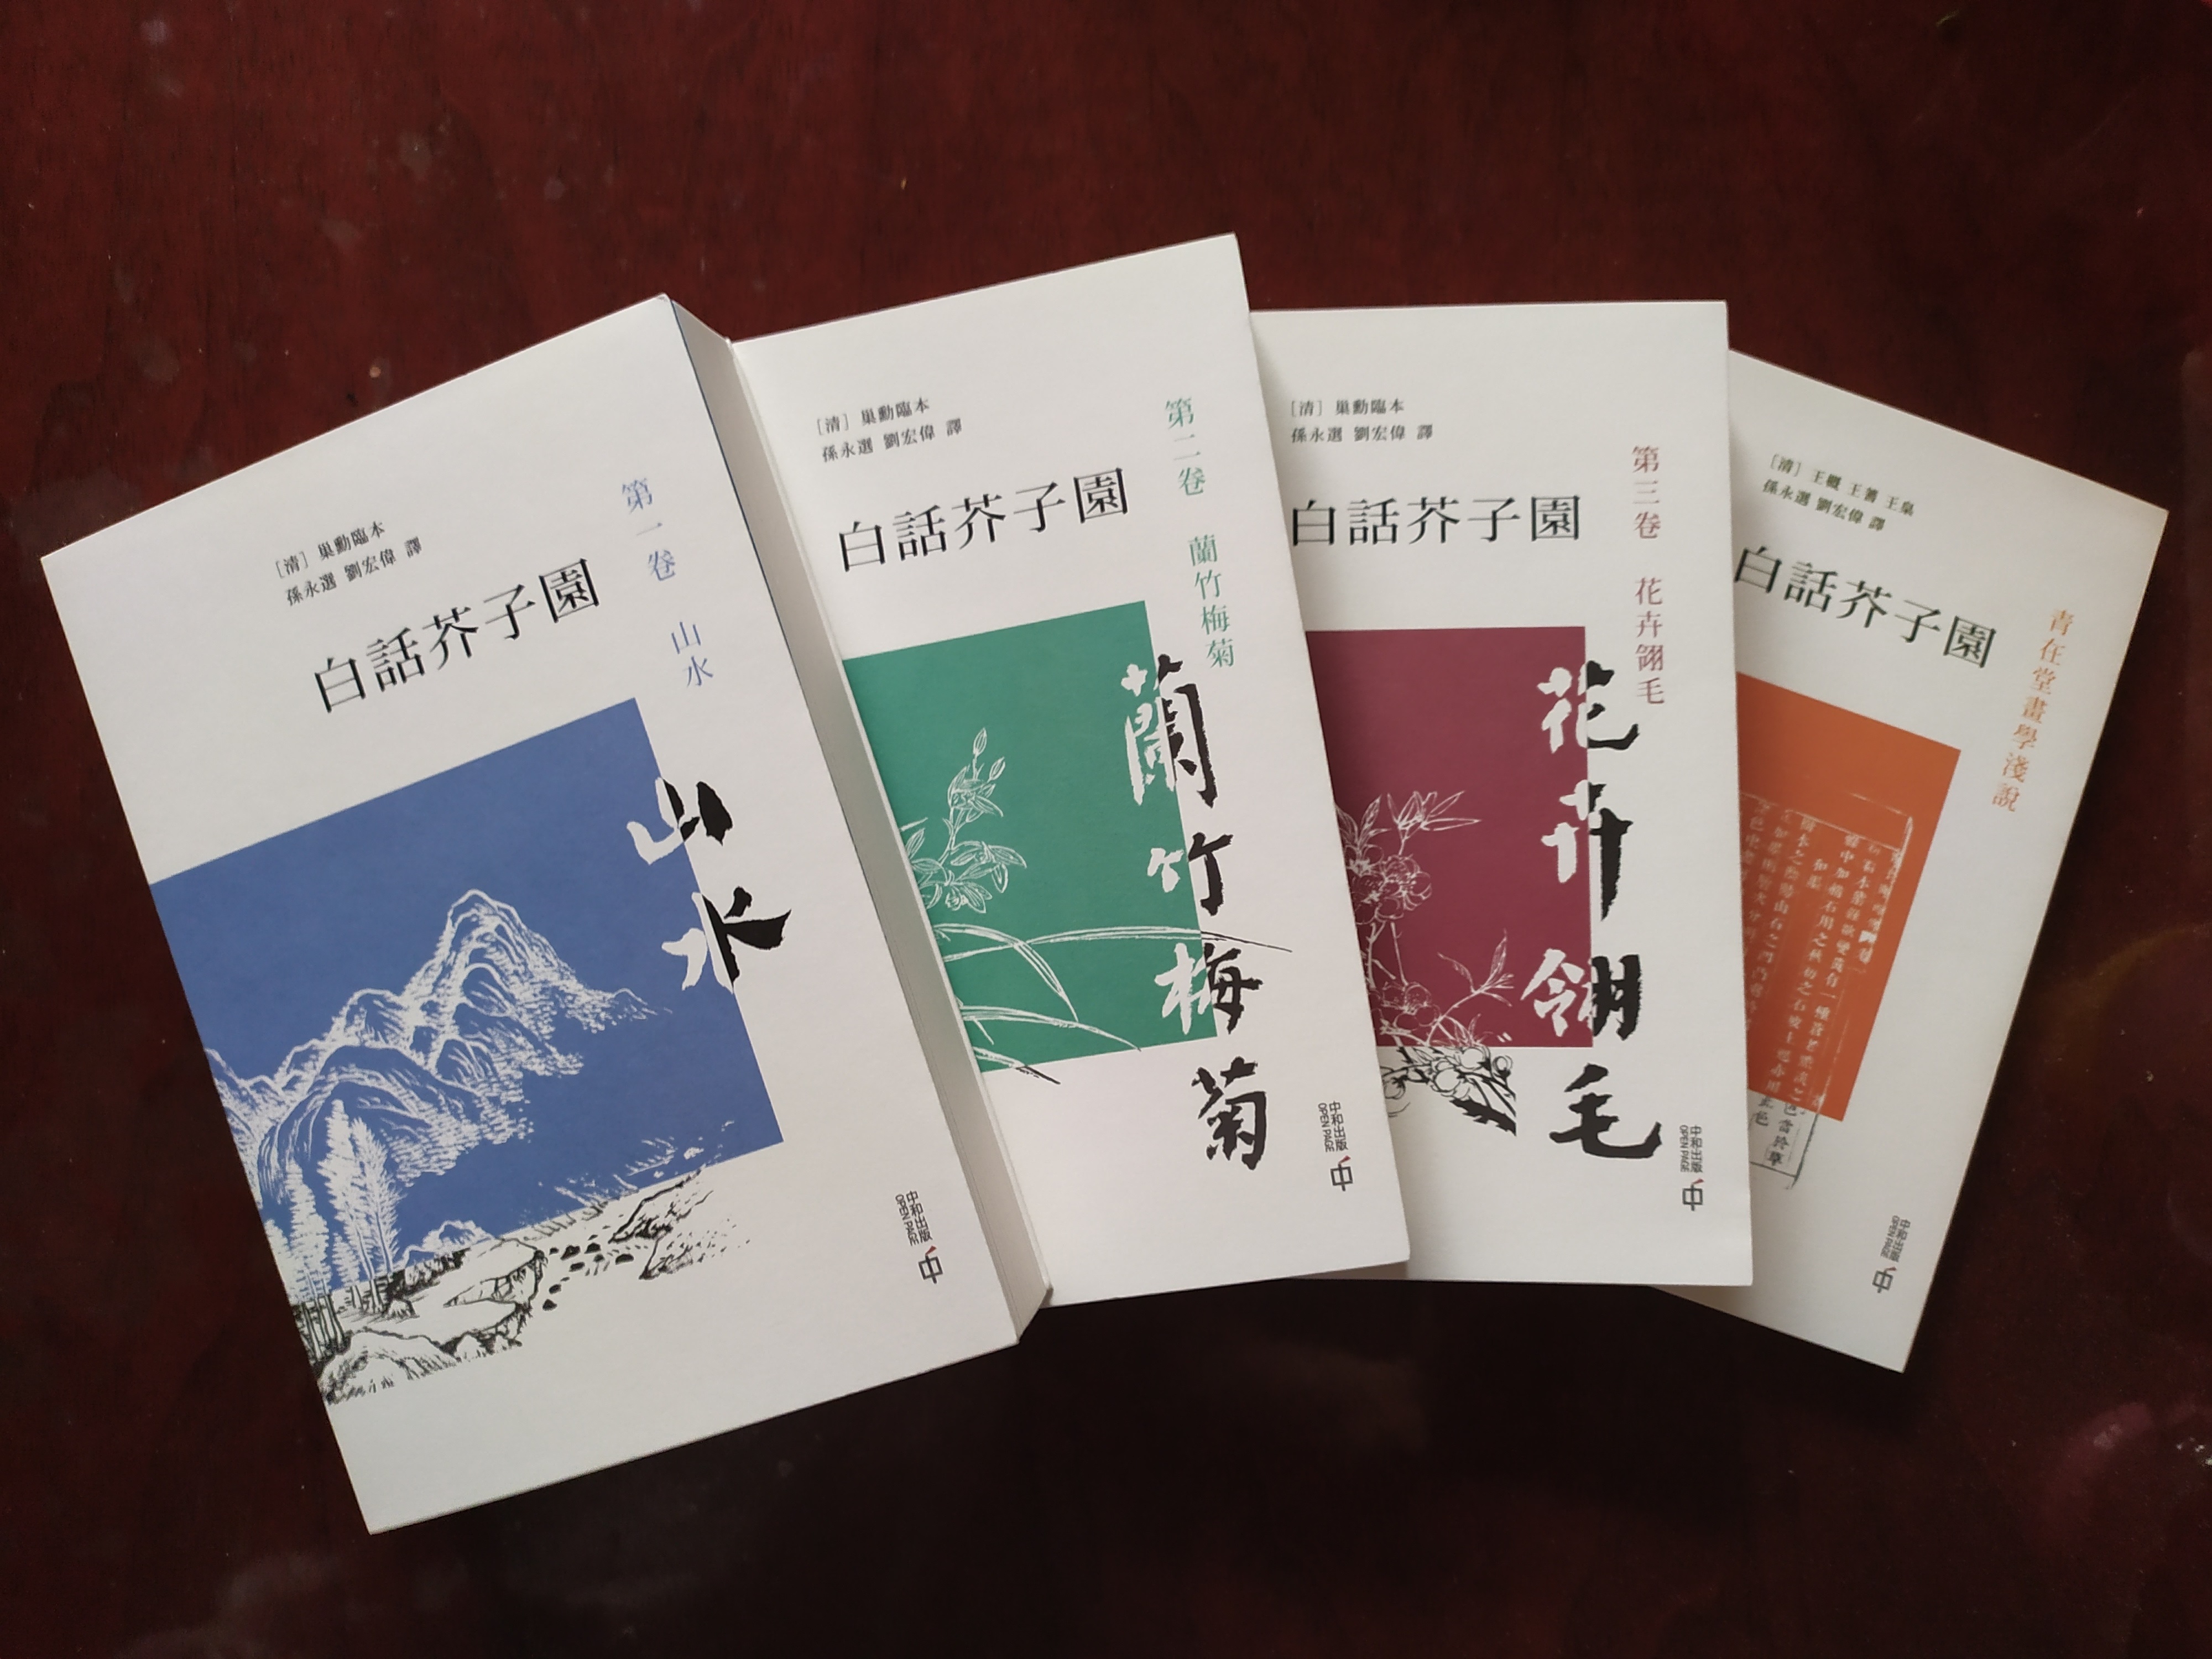 彭门创作室导师孙永选教授译著《白话芥子园》在香港出版